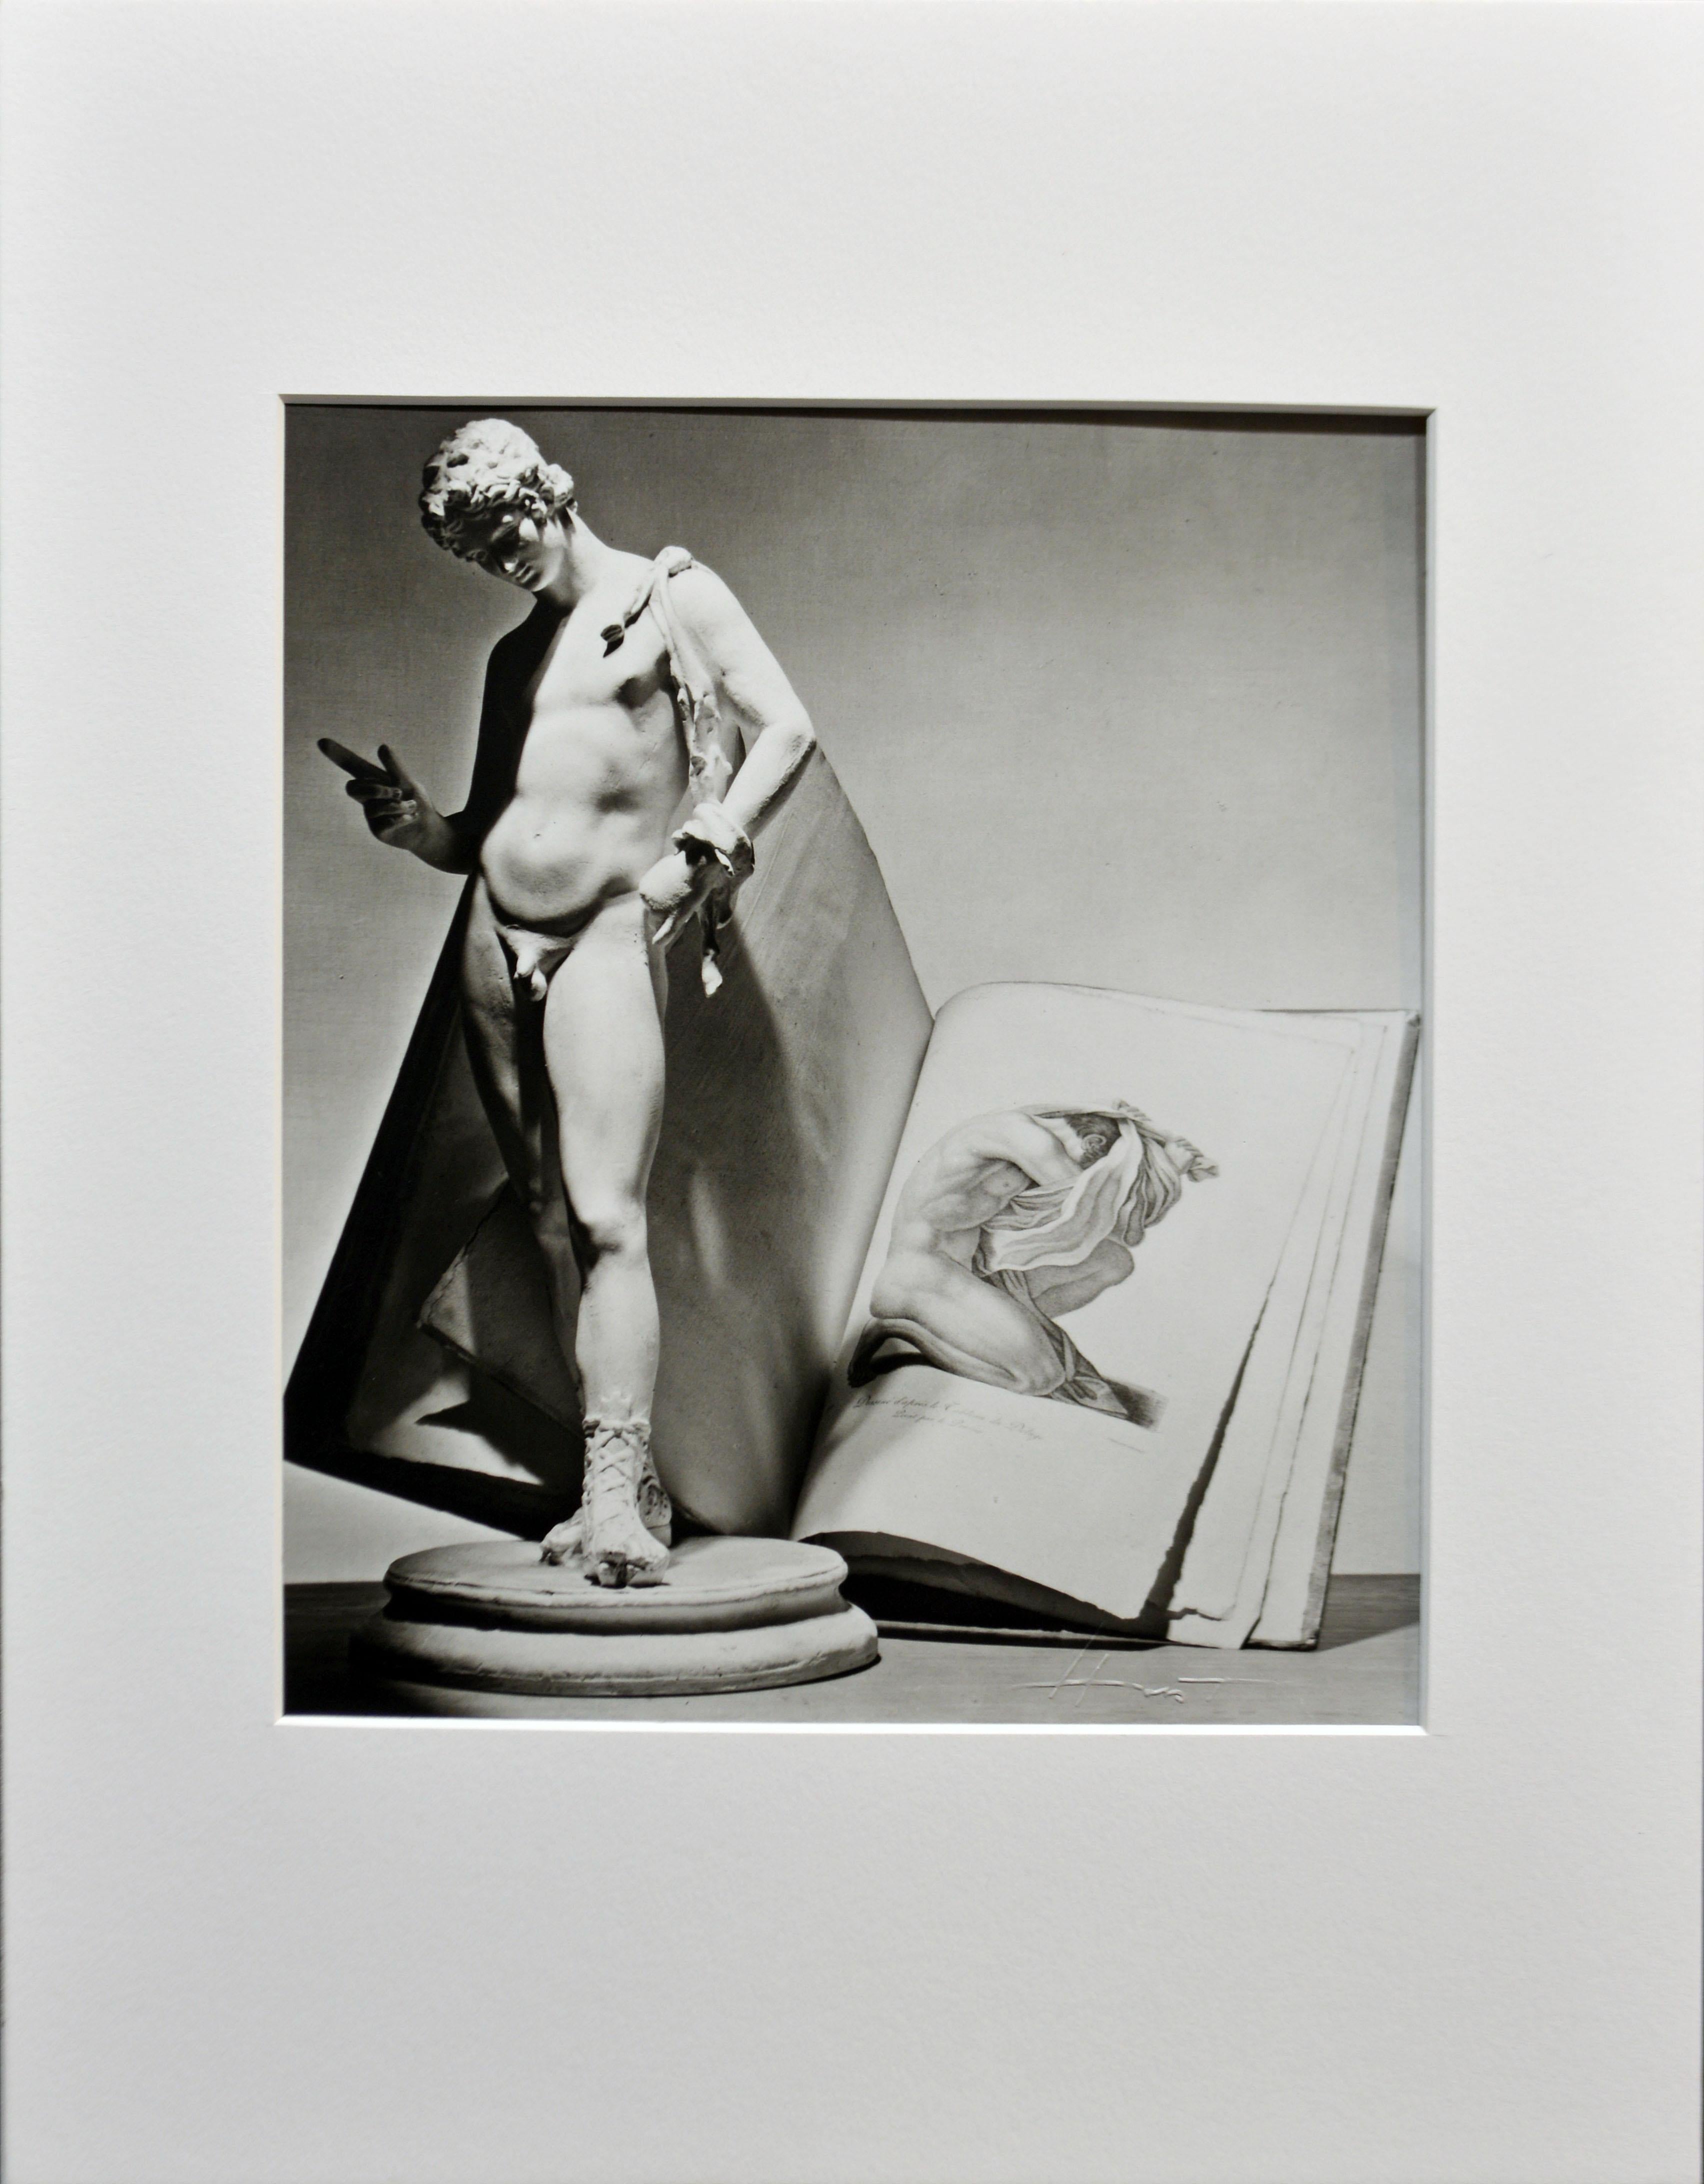 Horst P. Horst (1906-1999)
Statue avec un livre, Paris 1938
Épreuve gélatino-argentique, tirée ultérieurement. Image : 7.5 x 8.25 in / 19 x 22 cm. Tapis : 11 x 14 in / 28 x 36 cm.
Signé, tamponné à l'aveugle, titré et numéroté au verso.

Horst